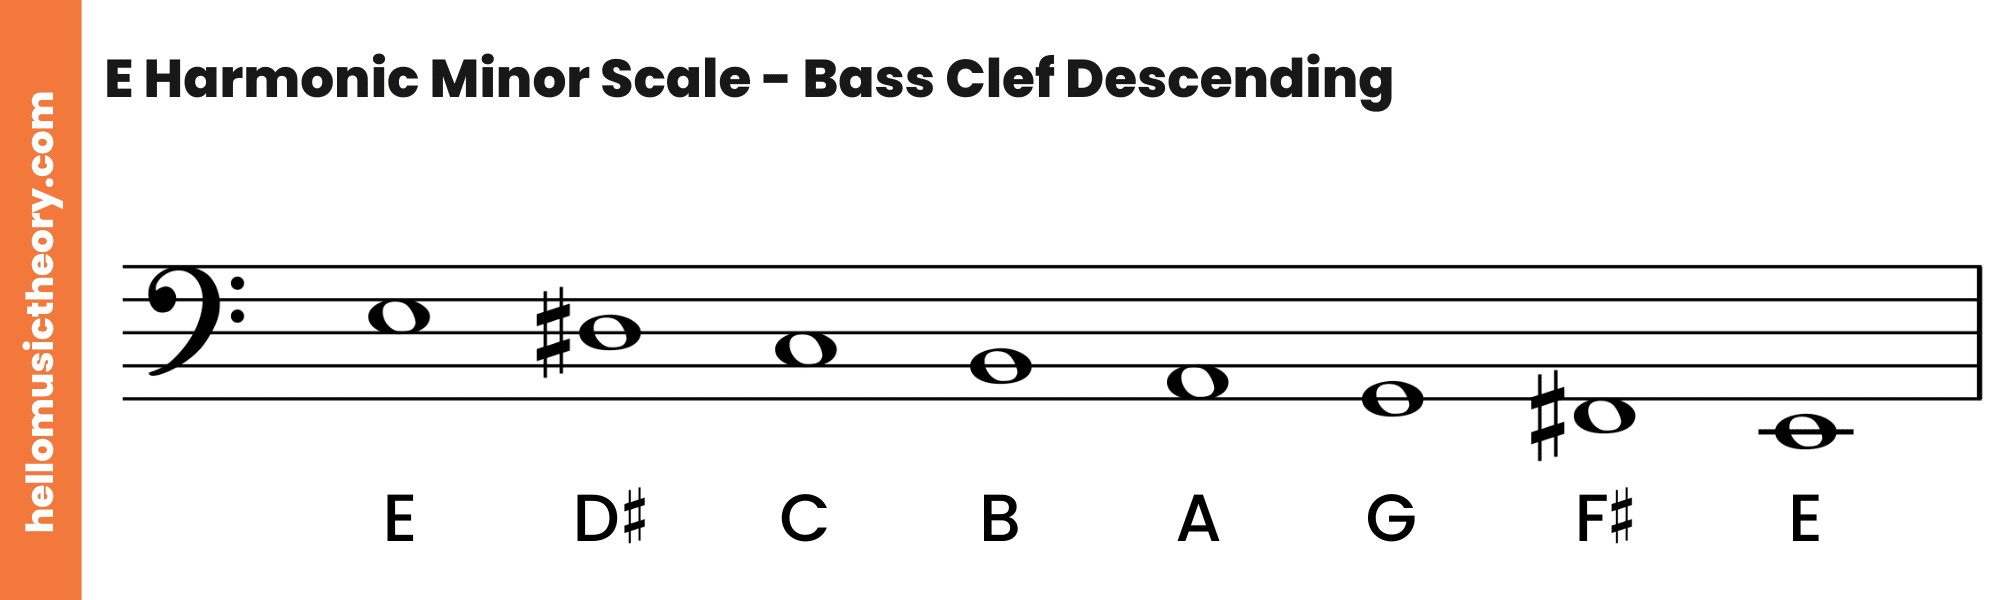 E Harmonic Minor Scale Bass Clef Descending